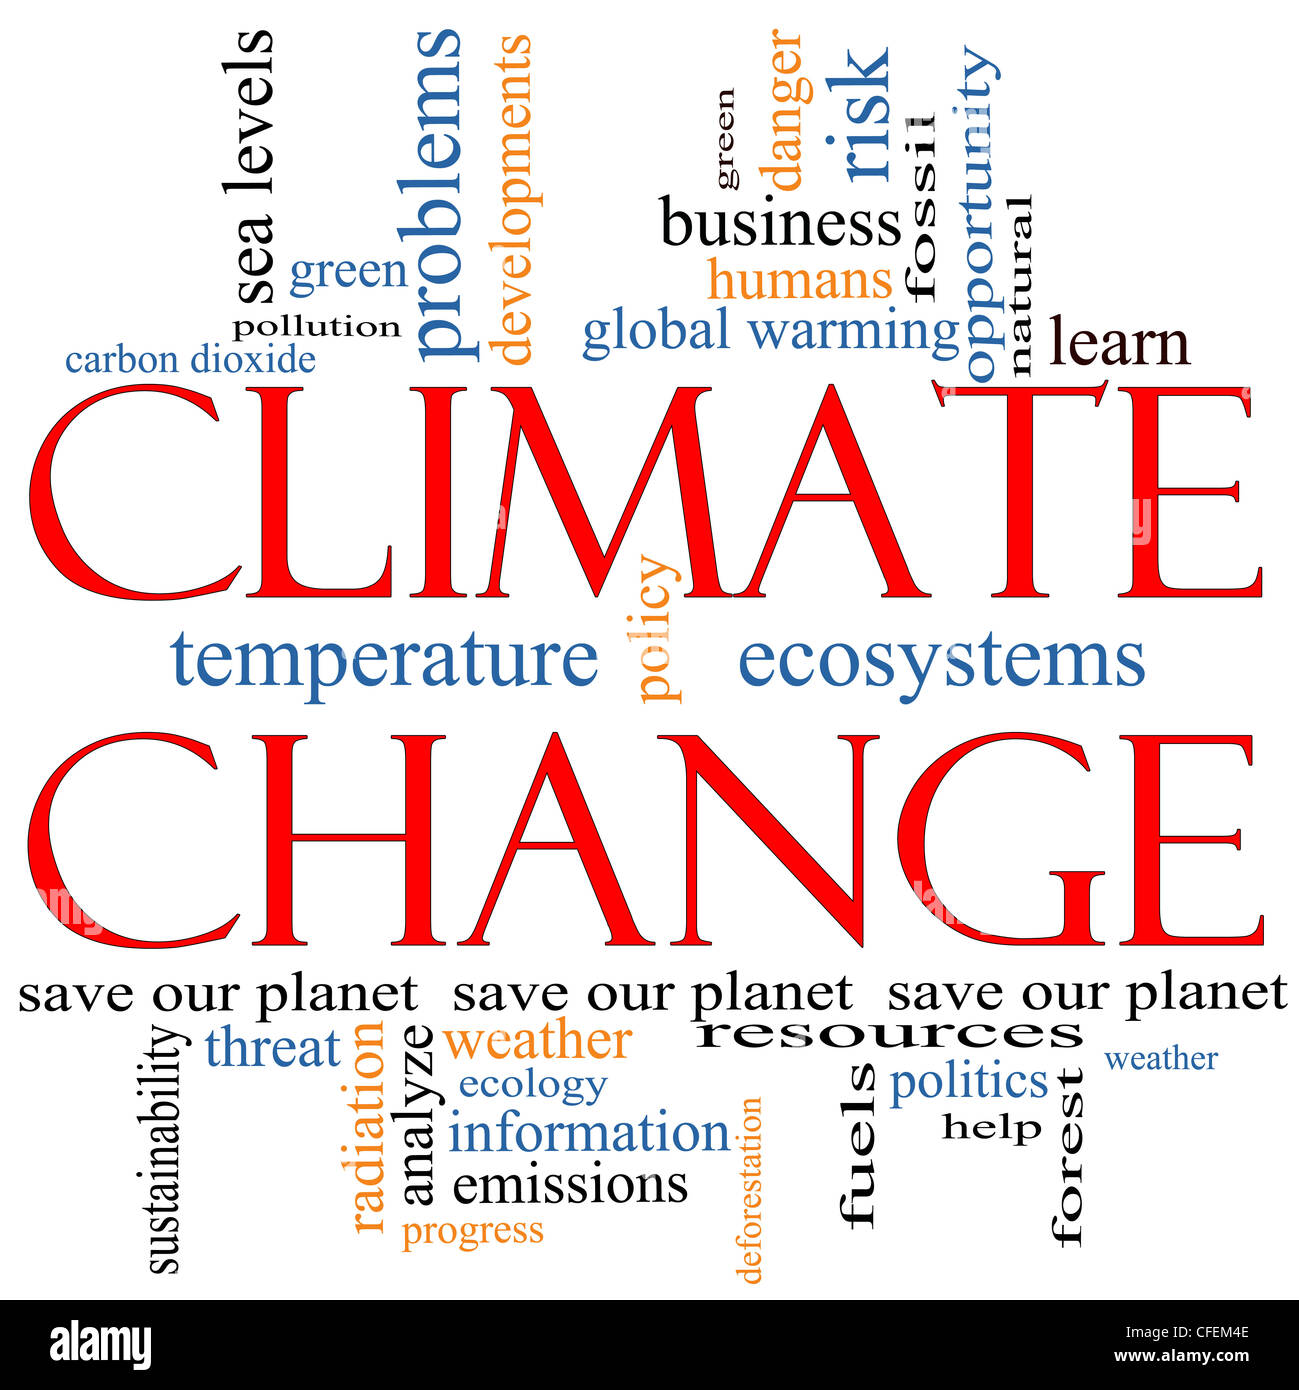 Un cambiamento climatico word cloud concetto con termini come salvare il pianeta, global warming, verde, di inquinamento e di più. Foto Stock